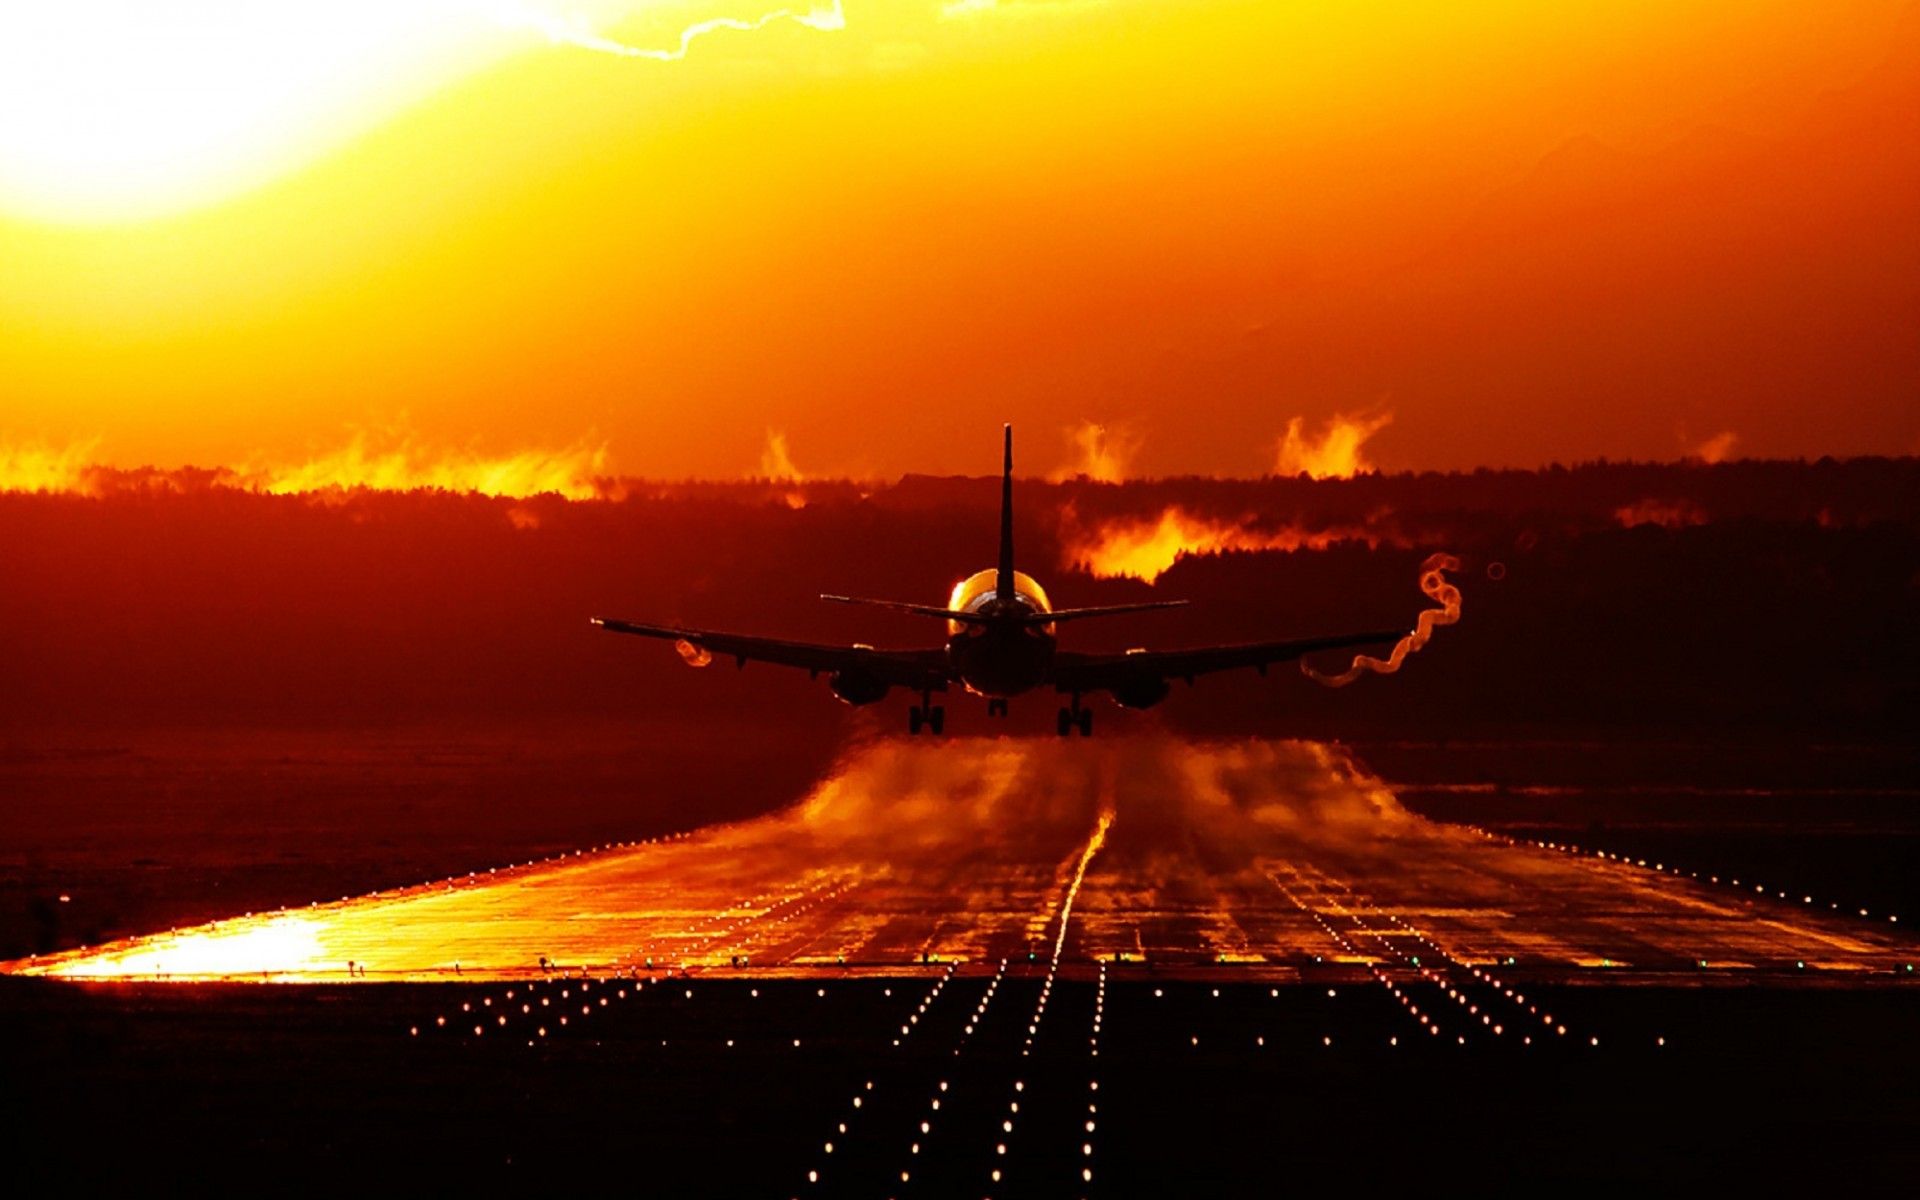 General 1920x1200 sunset aircraft vehicle sunlight passenger aircraft